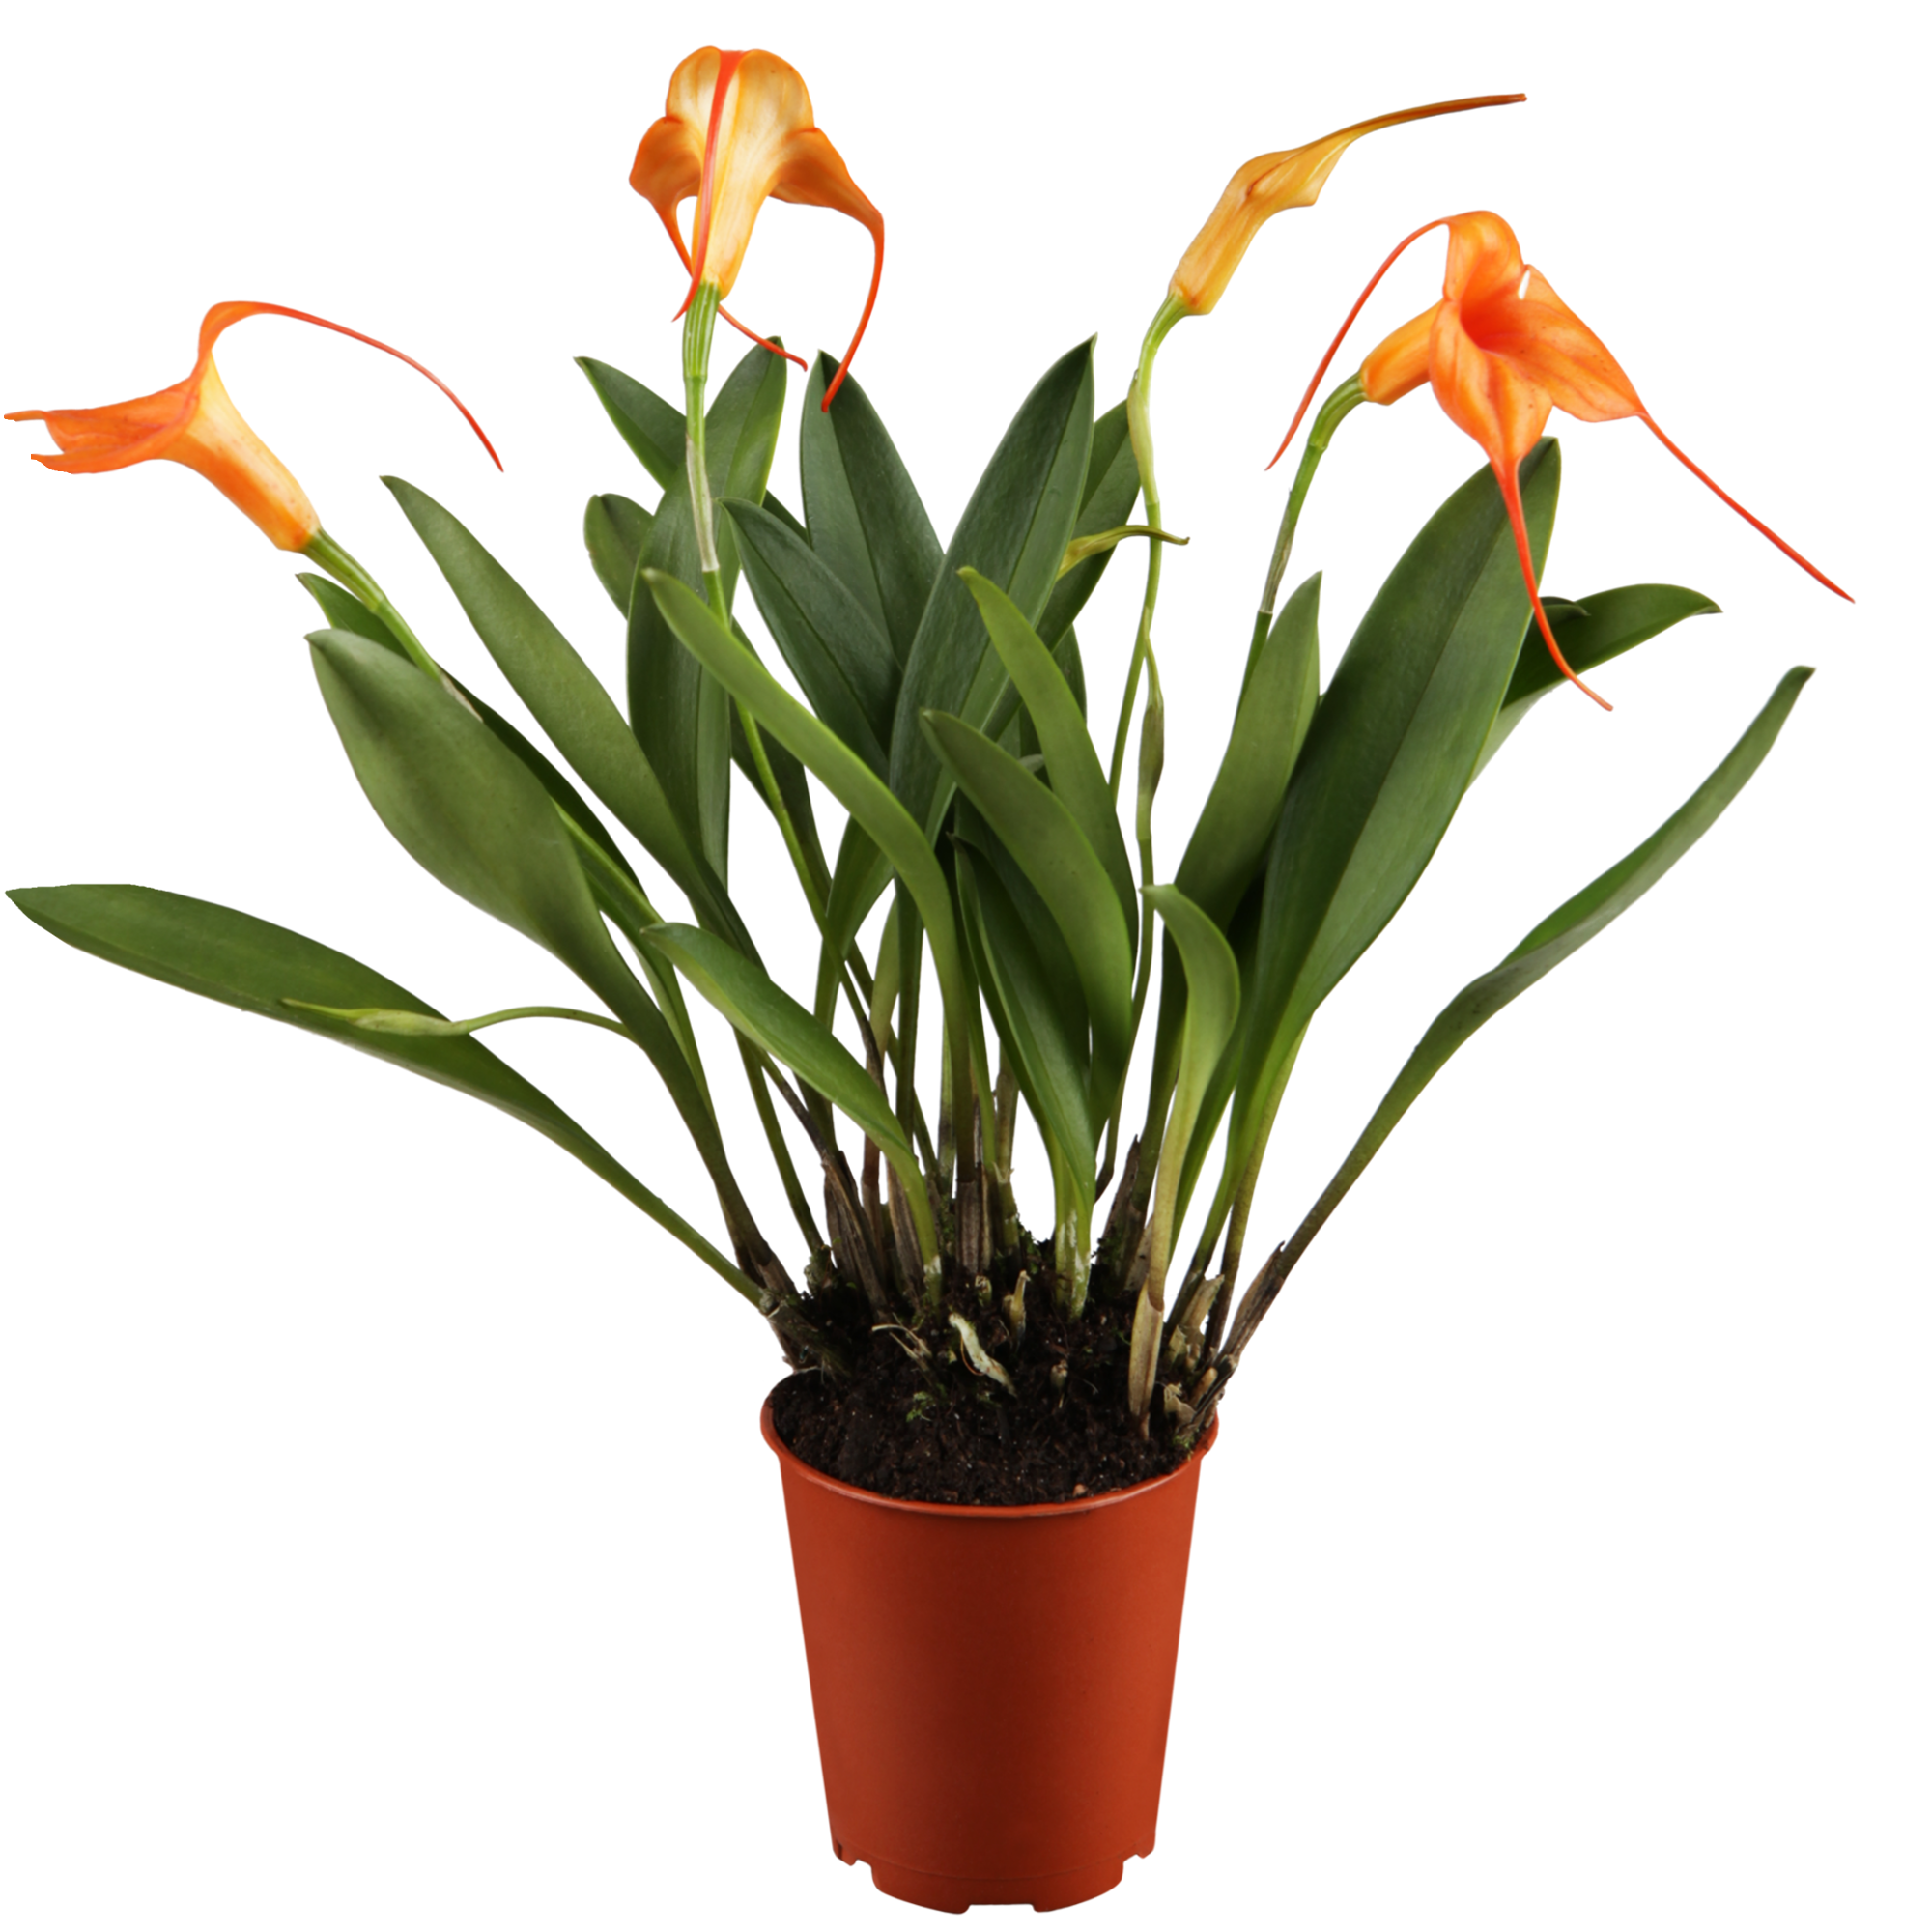 Masdevallia-Orchidee 4 Rispen orange, 9 cm Topf + product picture